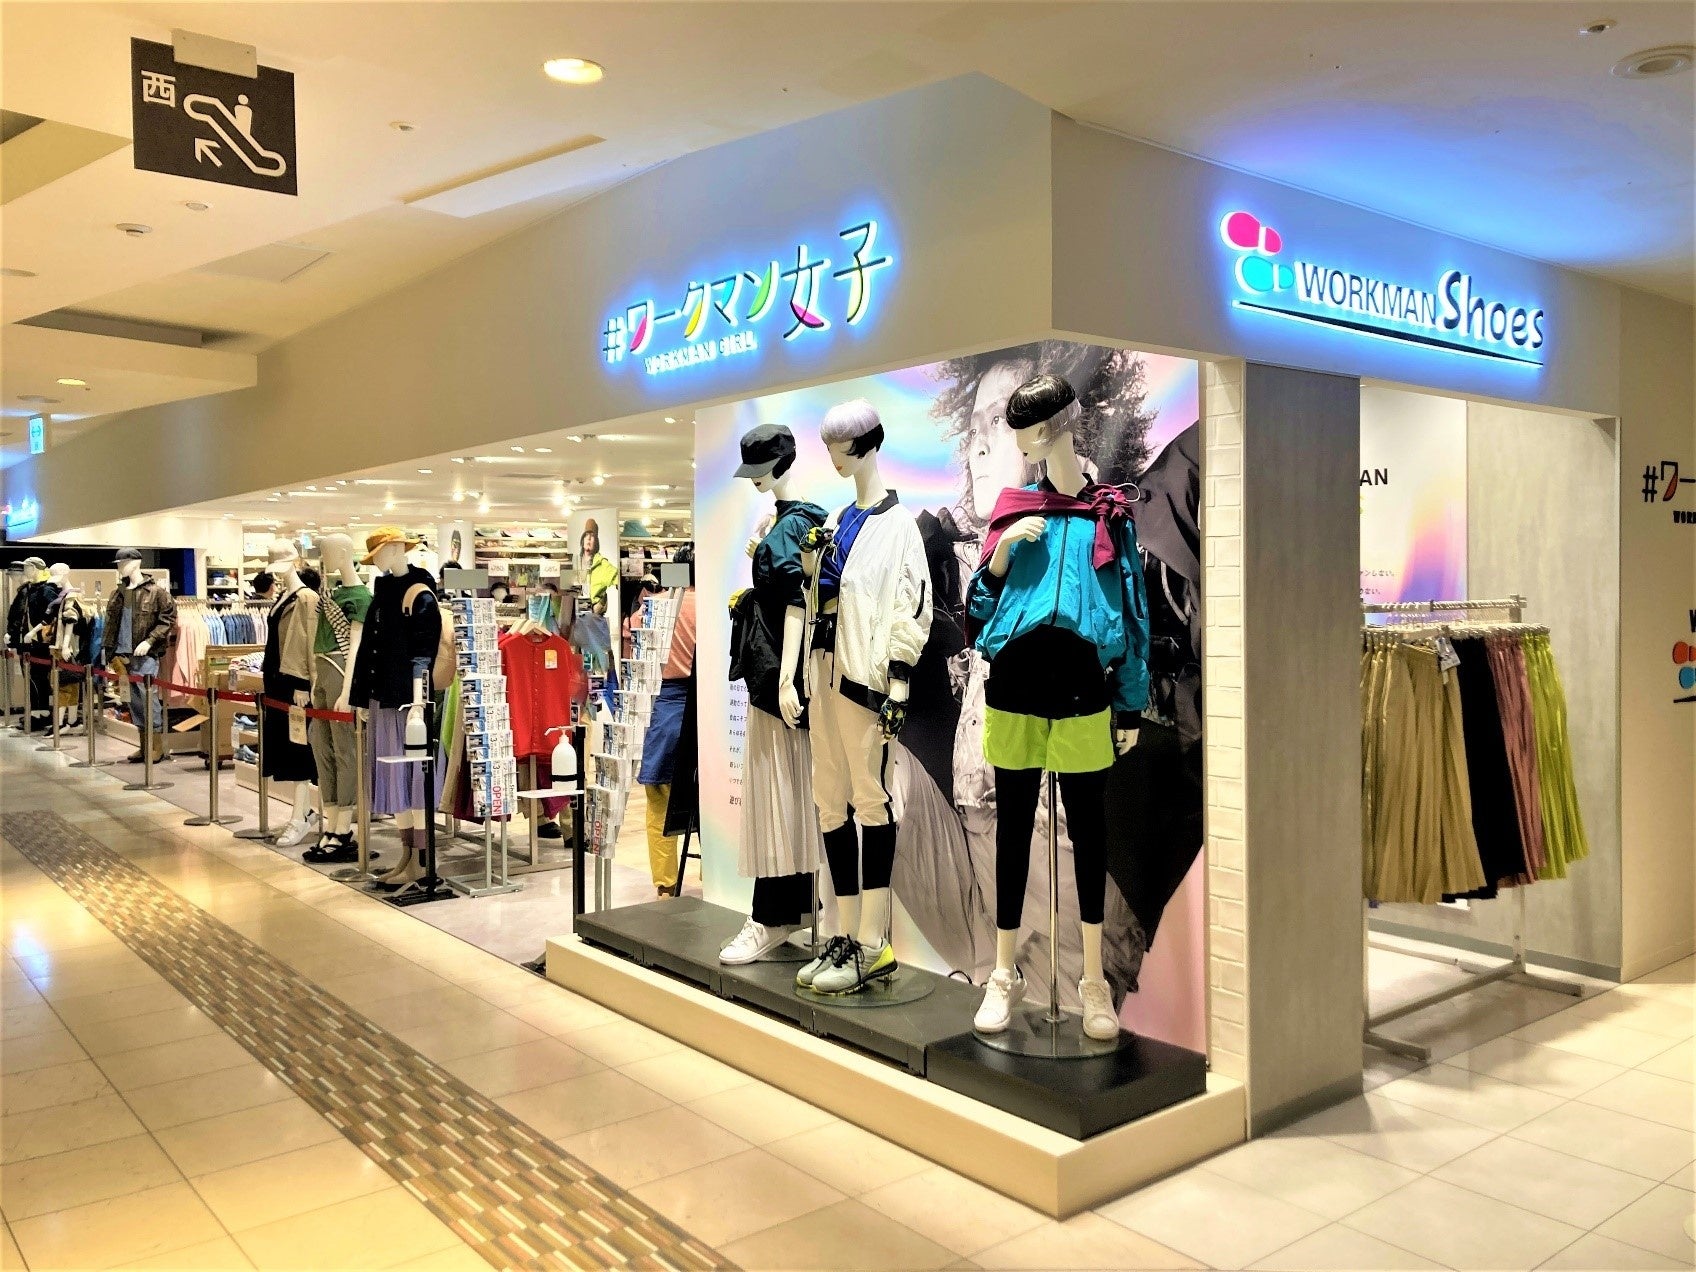 マスコミ、インフルエンサー向けに横浜ビブレ店内覧会を開催「#ワークマン女子」×「WORKMAN Shoes」 ×「ファッション」の新店舗のサブ画像1